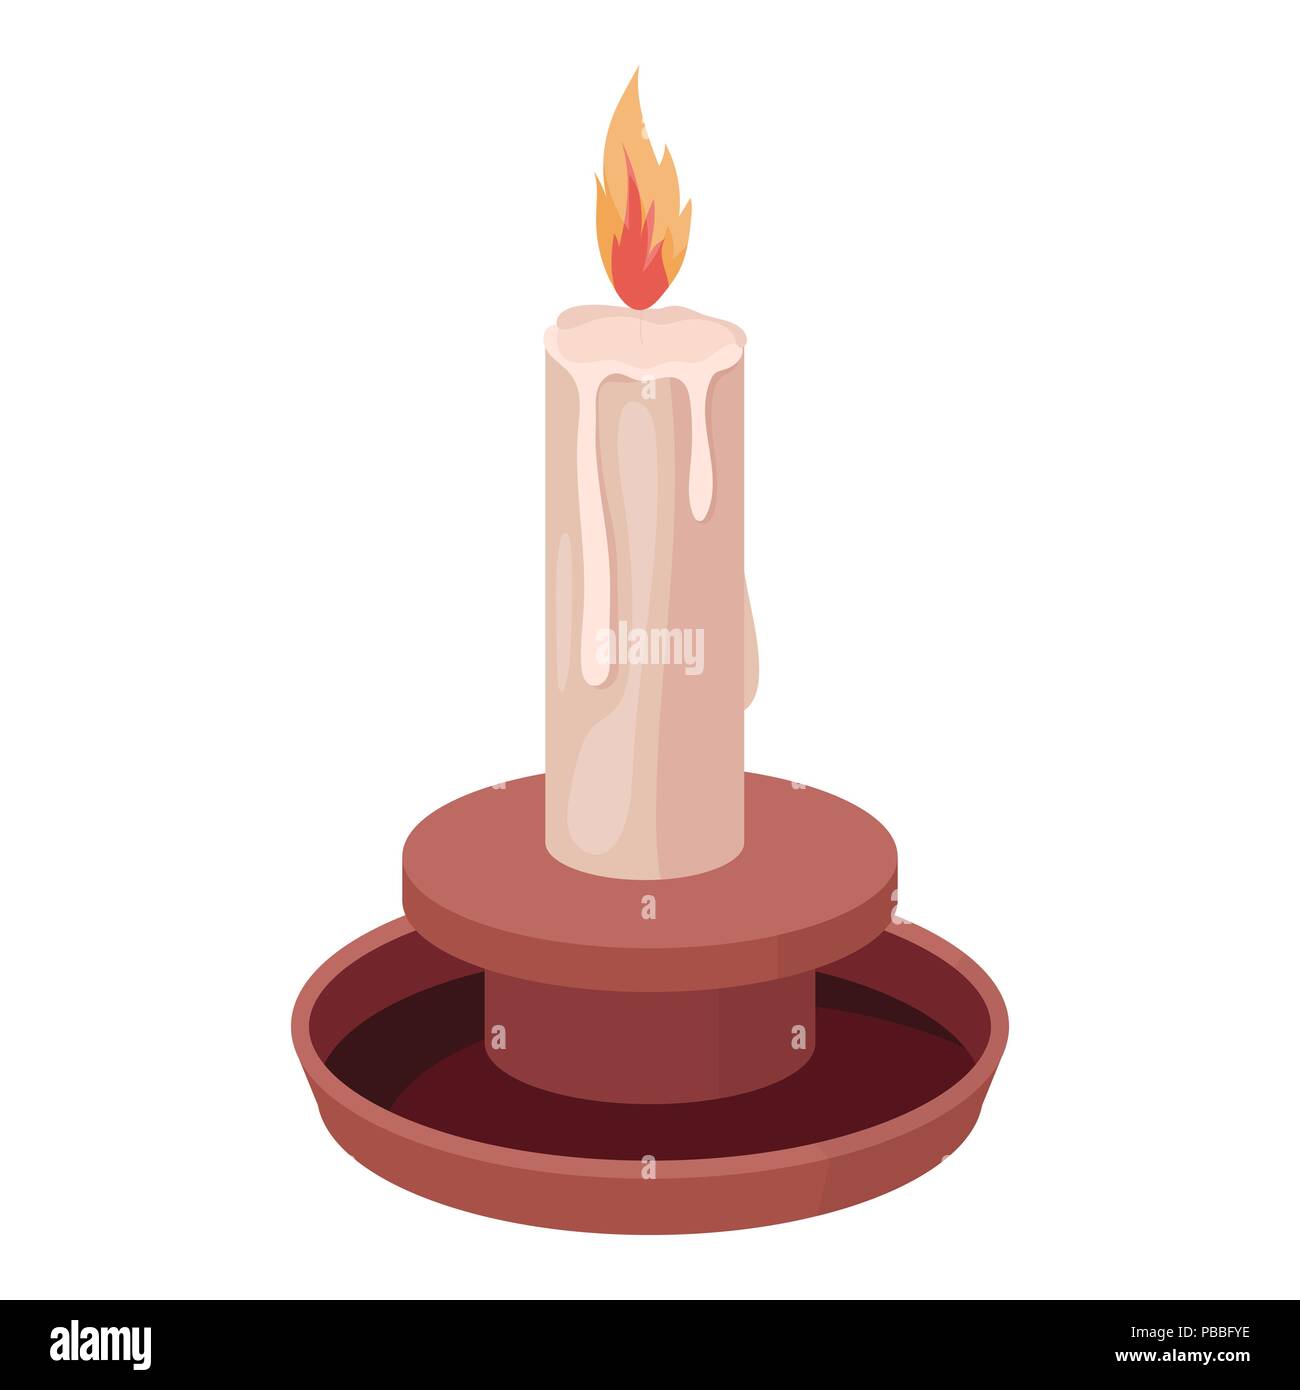 Kerze, Symbol im Comic-stil auf weißem Hintergrund. Lichtquelle symbol  Vektor illustration Stock-Vektorgrafik - Alamy